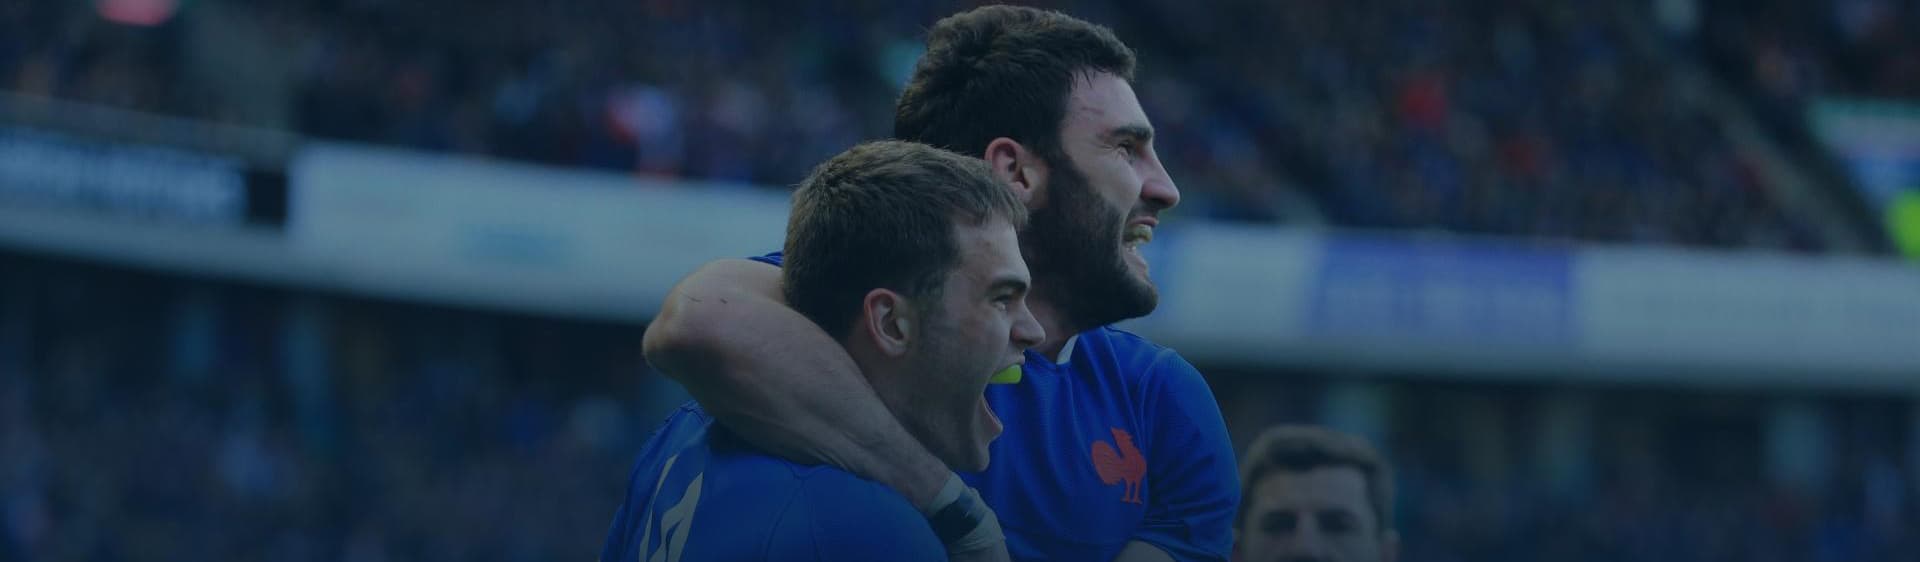 La partage en héritage, deux joueurs de rugby qui fêtent leur victoire